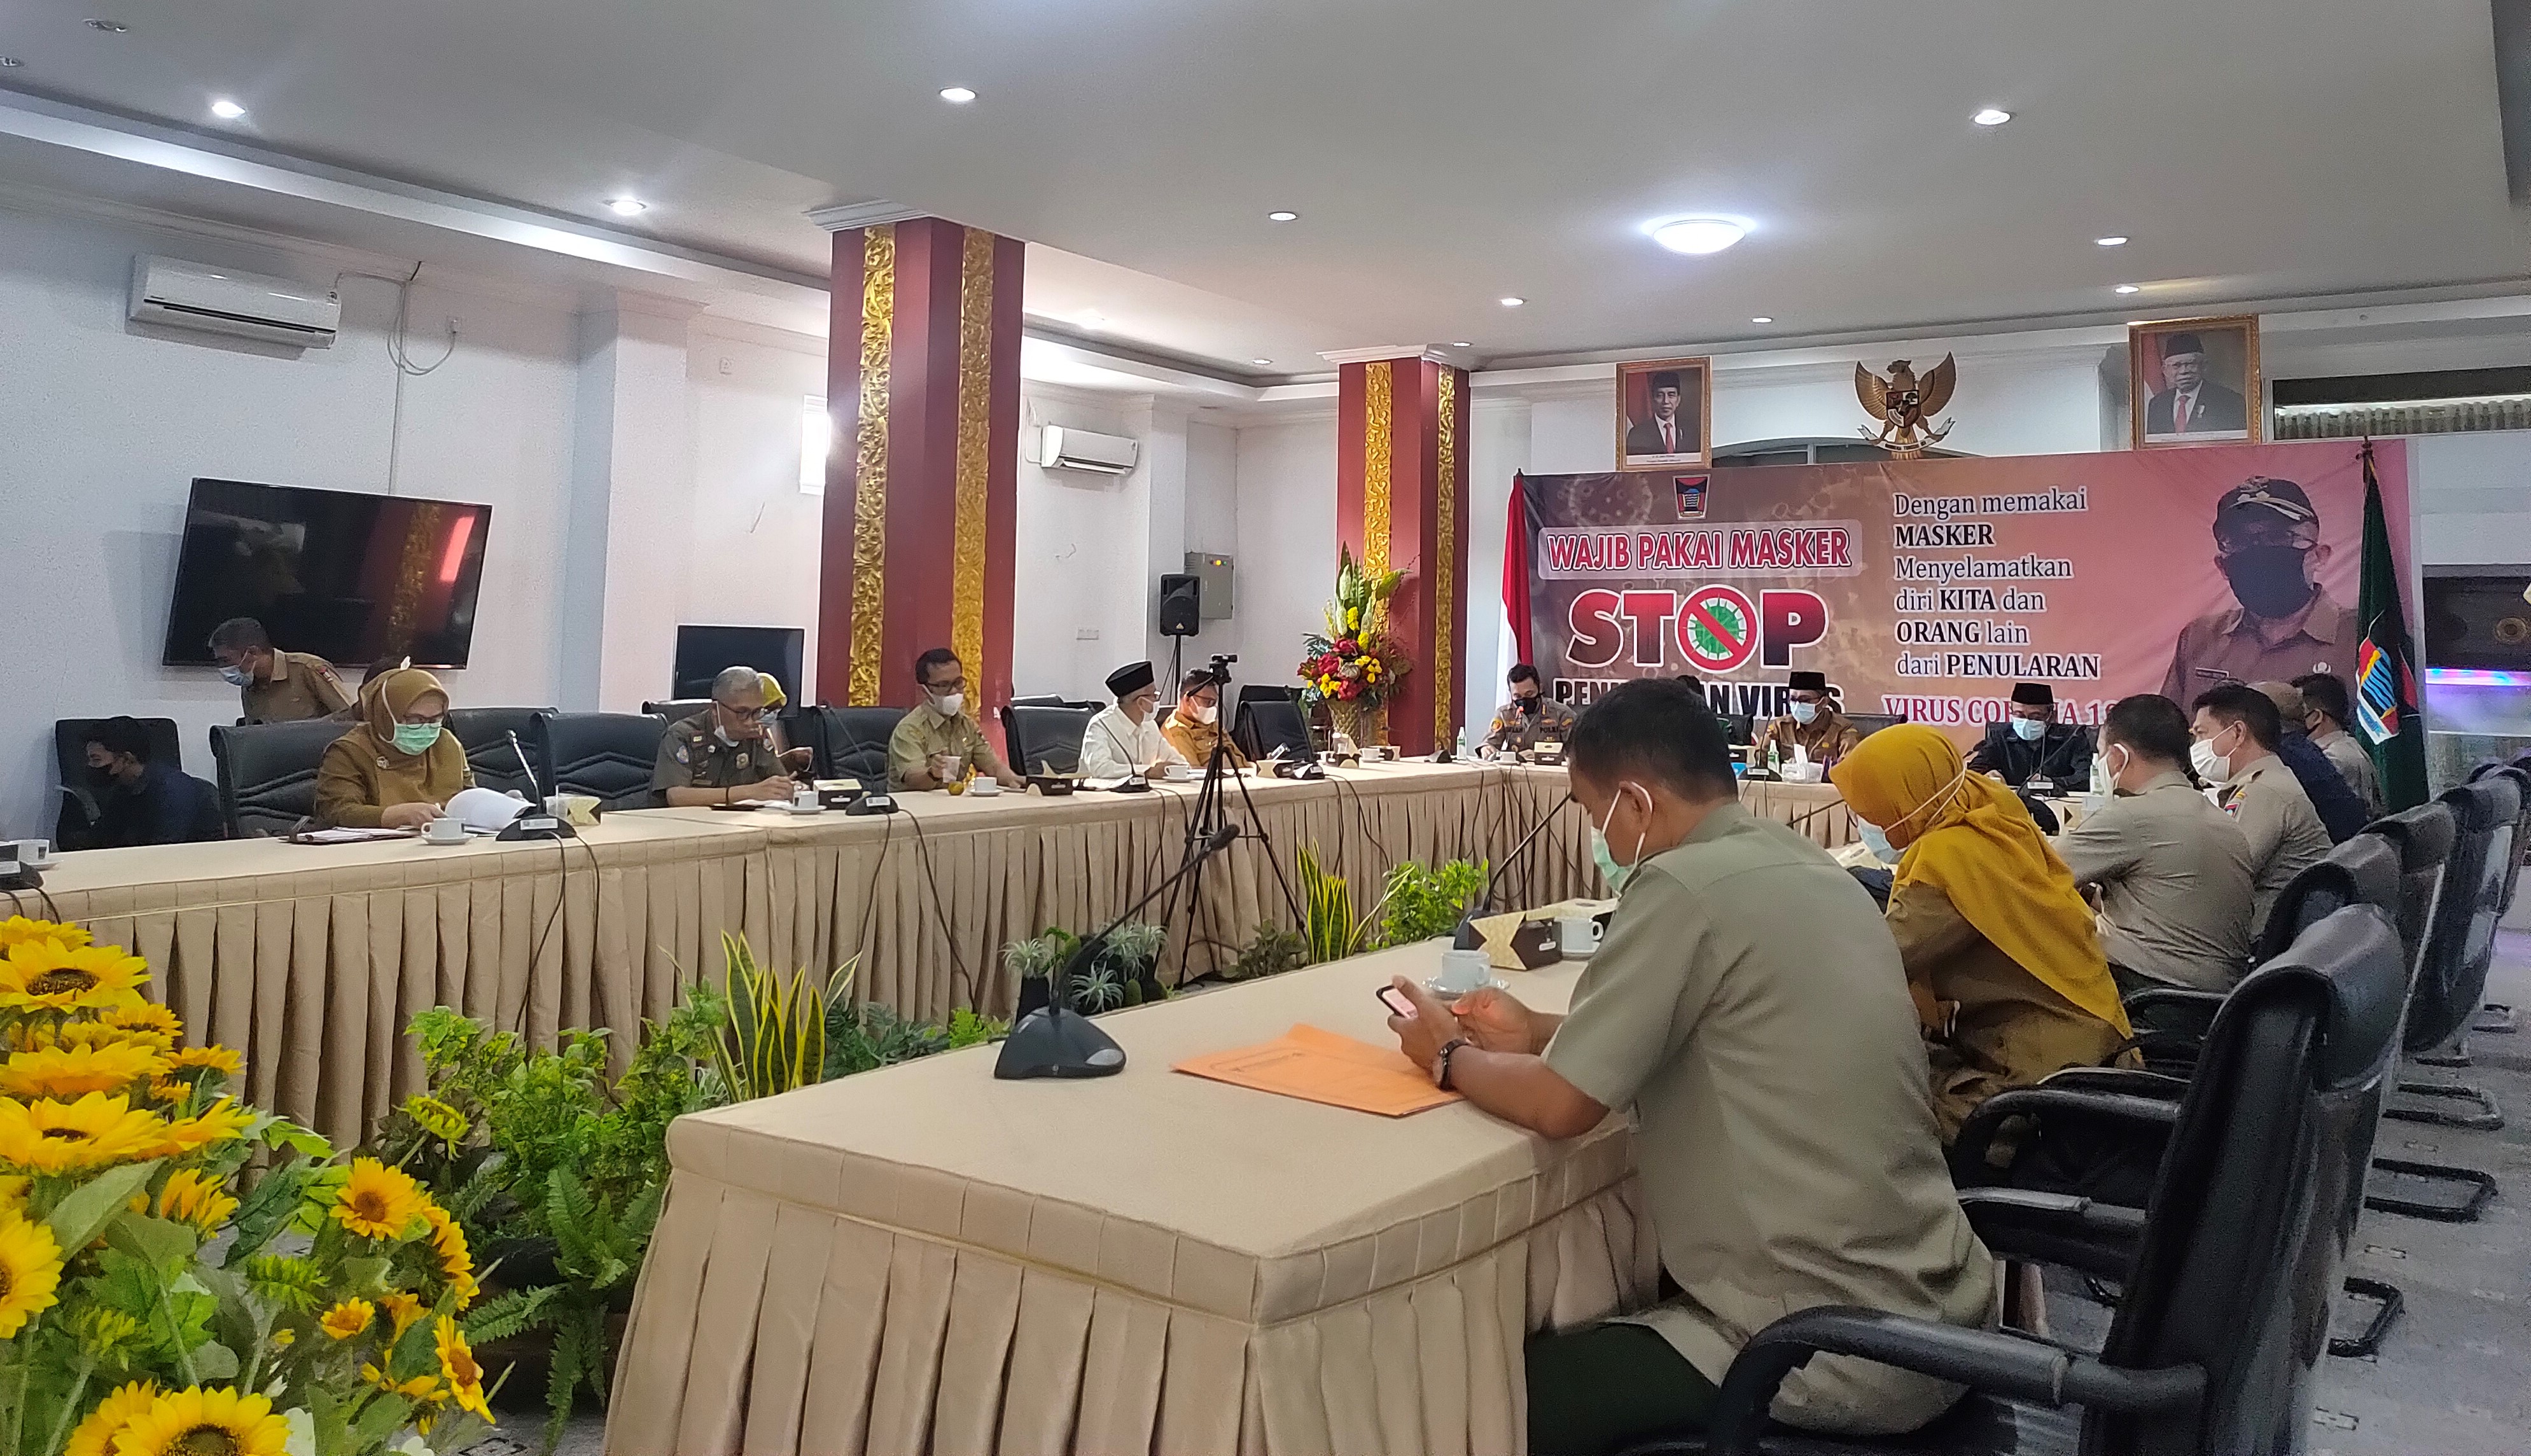 Pemerintah Kota Padang, Sumatera Barat terhitung mulai besok(08) sampai 20 Juli 2021 mulai jalankan Pemberlakuan Pembatasan Kegiatan Masyarakat (PPKM) mikro(Foto:hms))